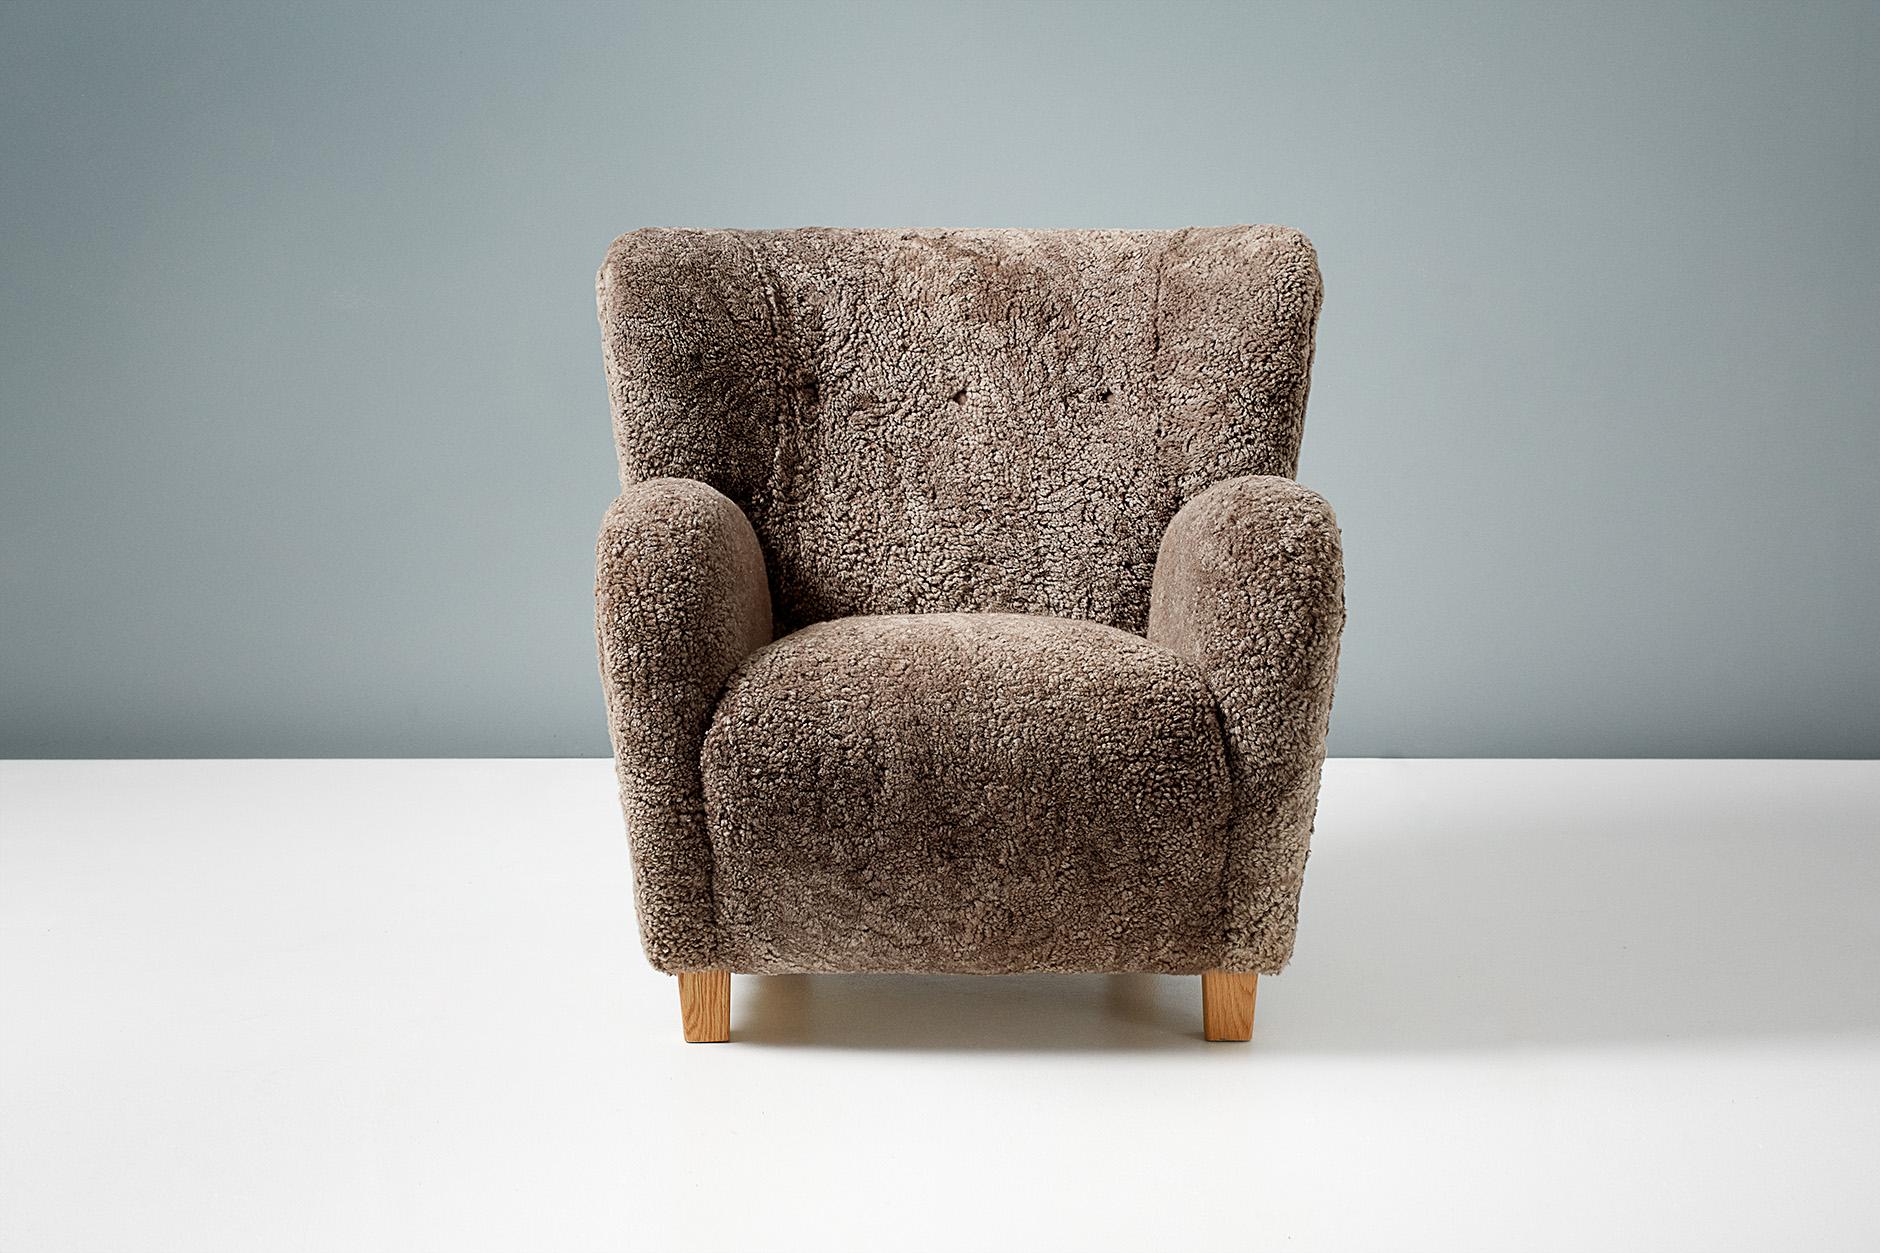 Dagmar design

Chaise longue Karu

Une paire de chaises longues sur mesure, conçues et produites dans nos ateliers de Londres, avec des matériaux de la plus haute qualité. Ces modèles sont tapissés en shearling 